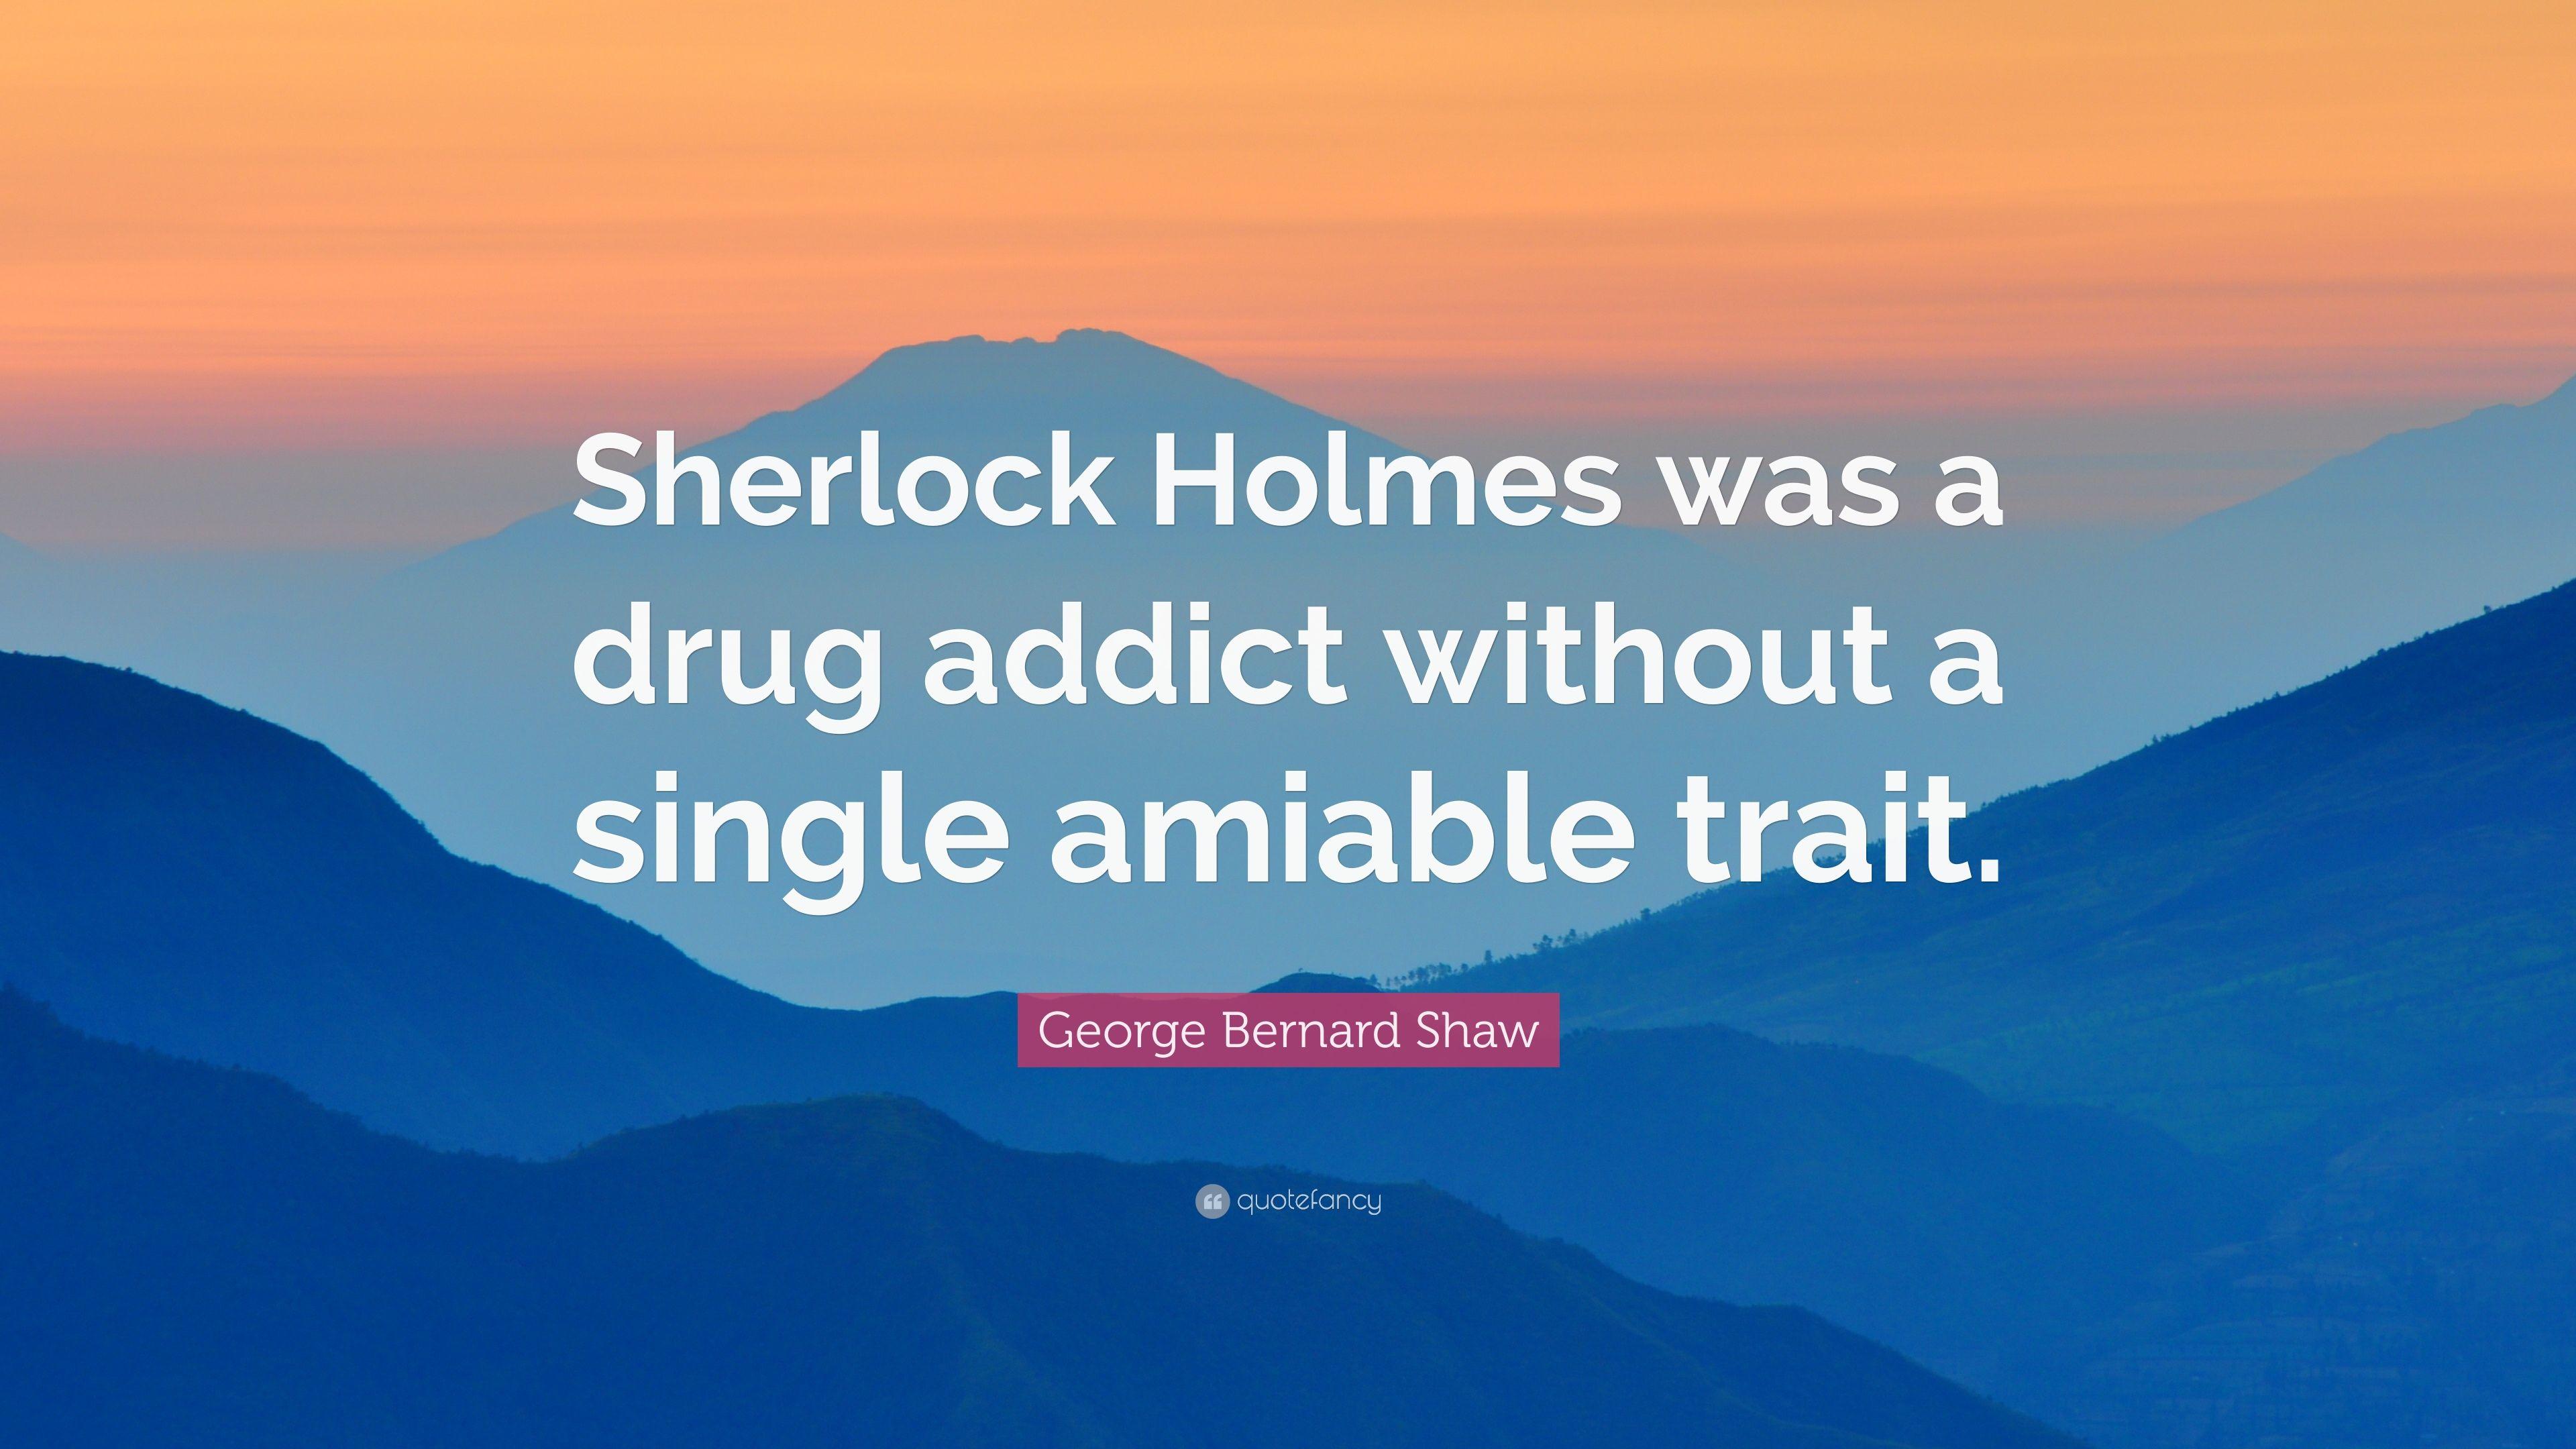 George Bernard Shaw Quote: “Sherlock Holmes was a drug addict